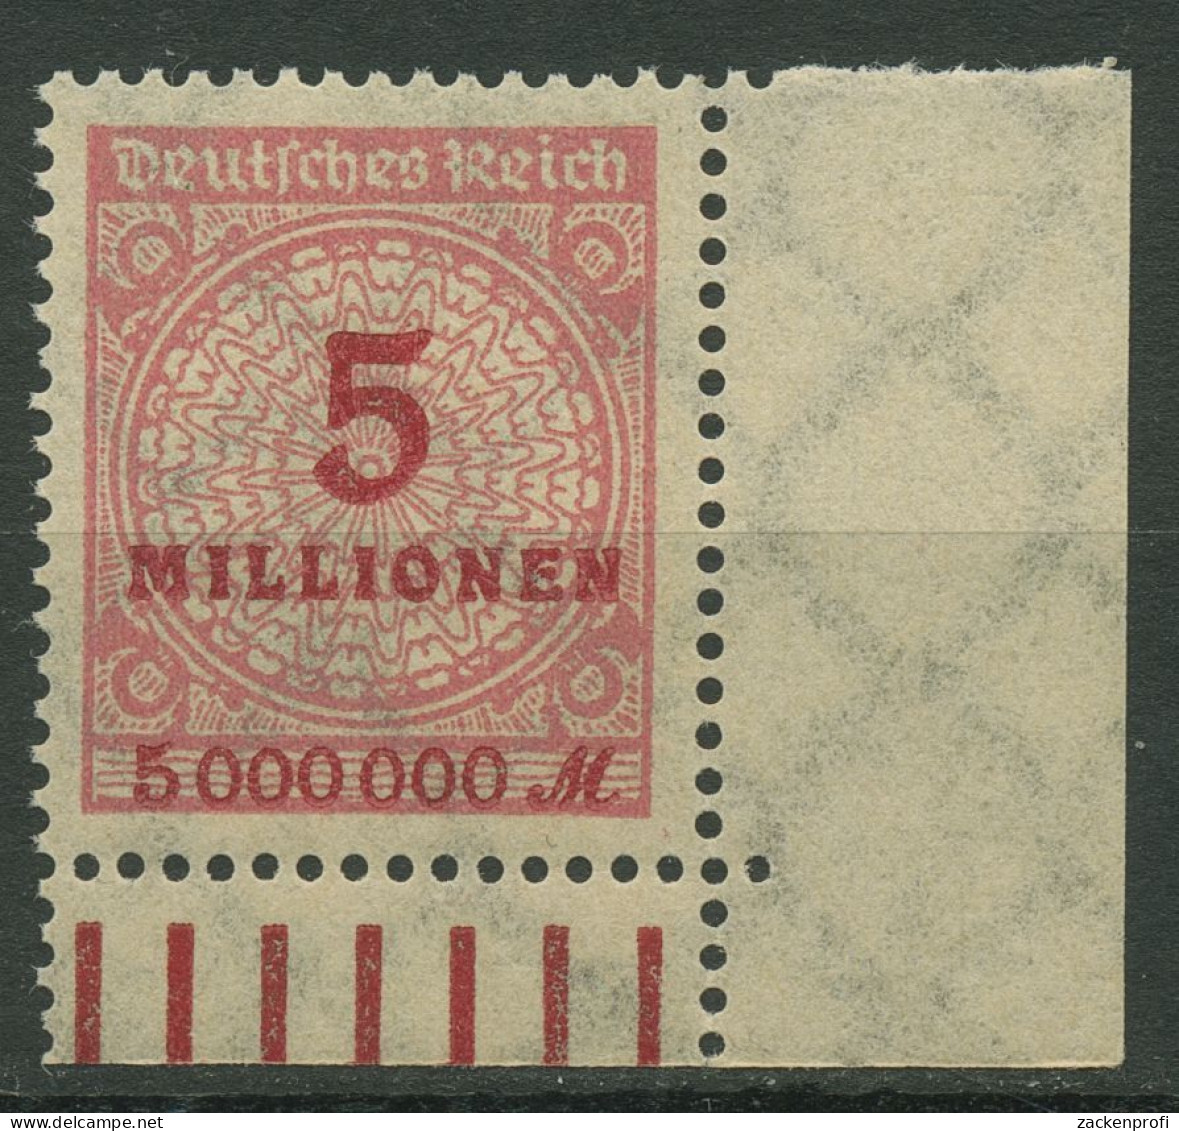 Deutsches Reich Inflation 1923 Korbdeckel Walze 317 AW Ecke Unt. Re. Postfrisch - Ungebraucht